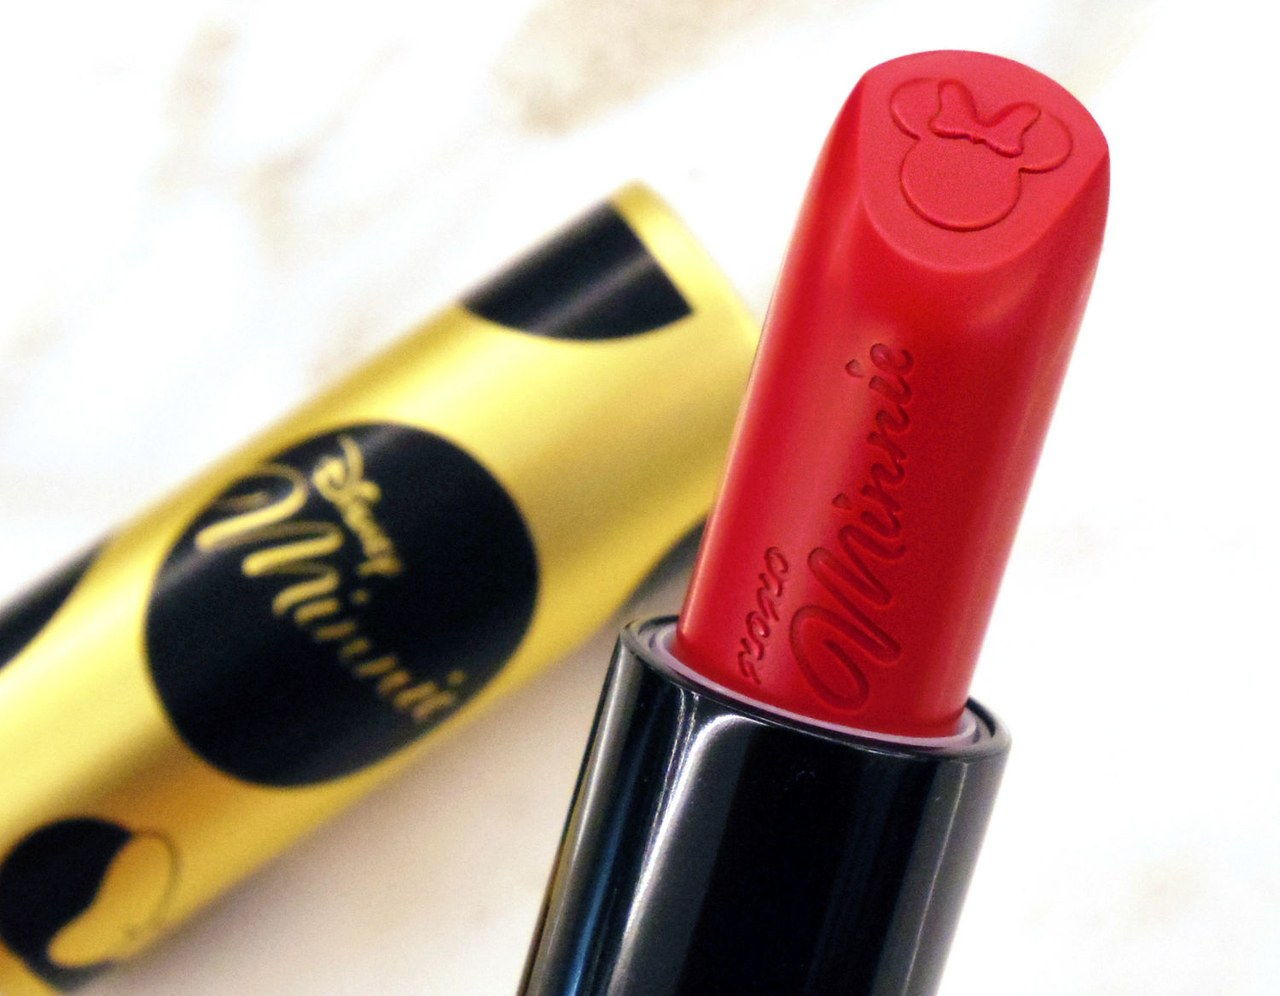 سيفورا minnie mouse perfect red lipstick